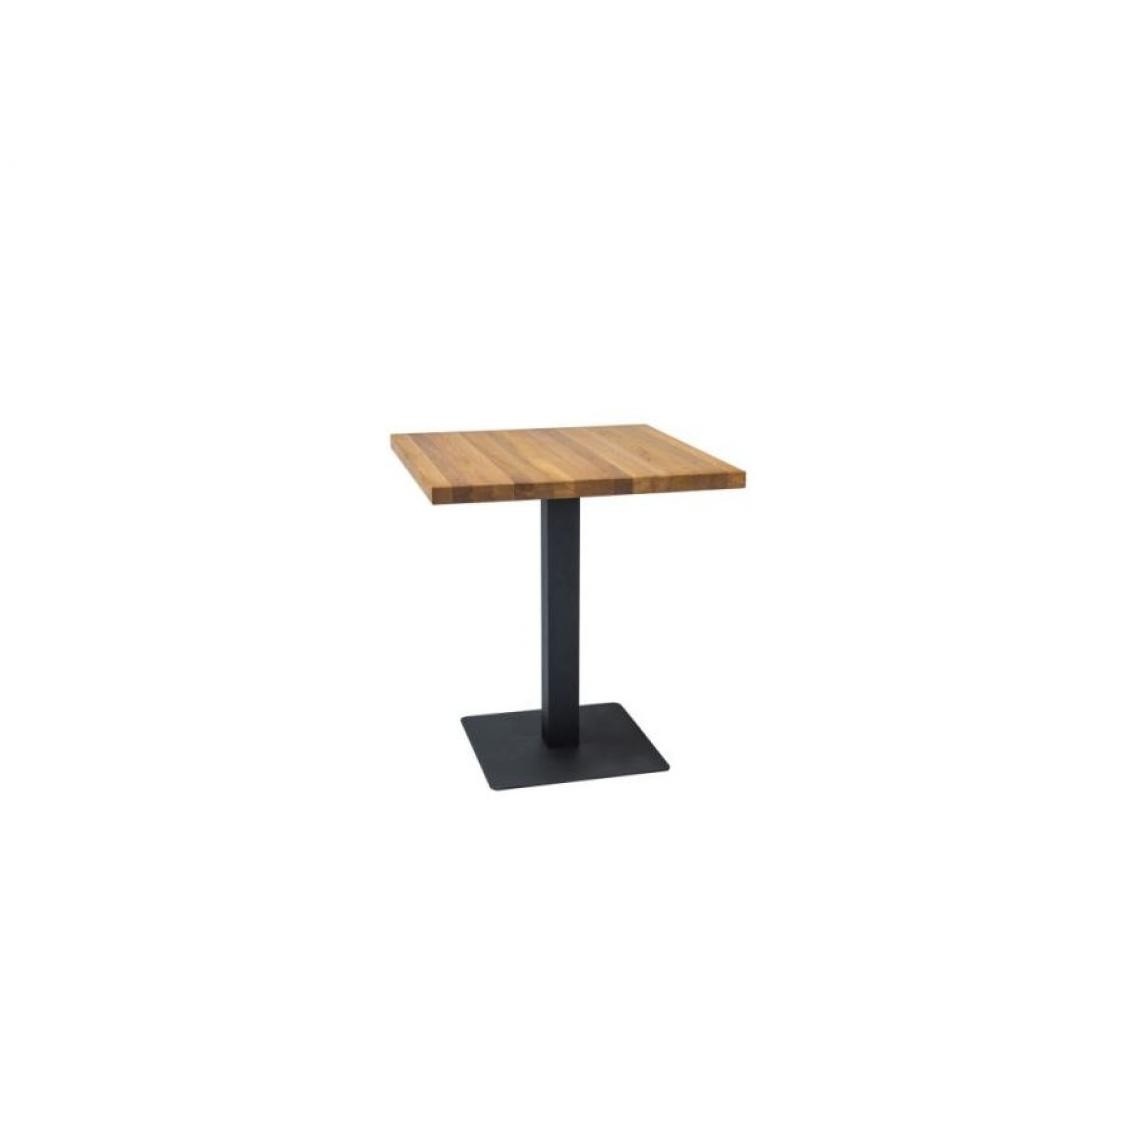 Hucoco - PUBO - Table de style loft avec un piètement en métal - 70x70x76 cm - Plateau carré en placage naturel - Table fixe - Chêne - Tables à manger